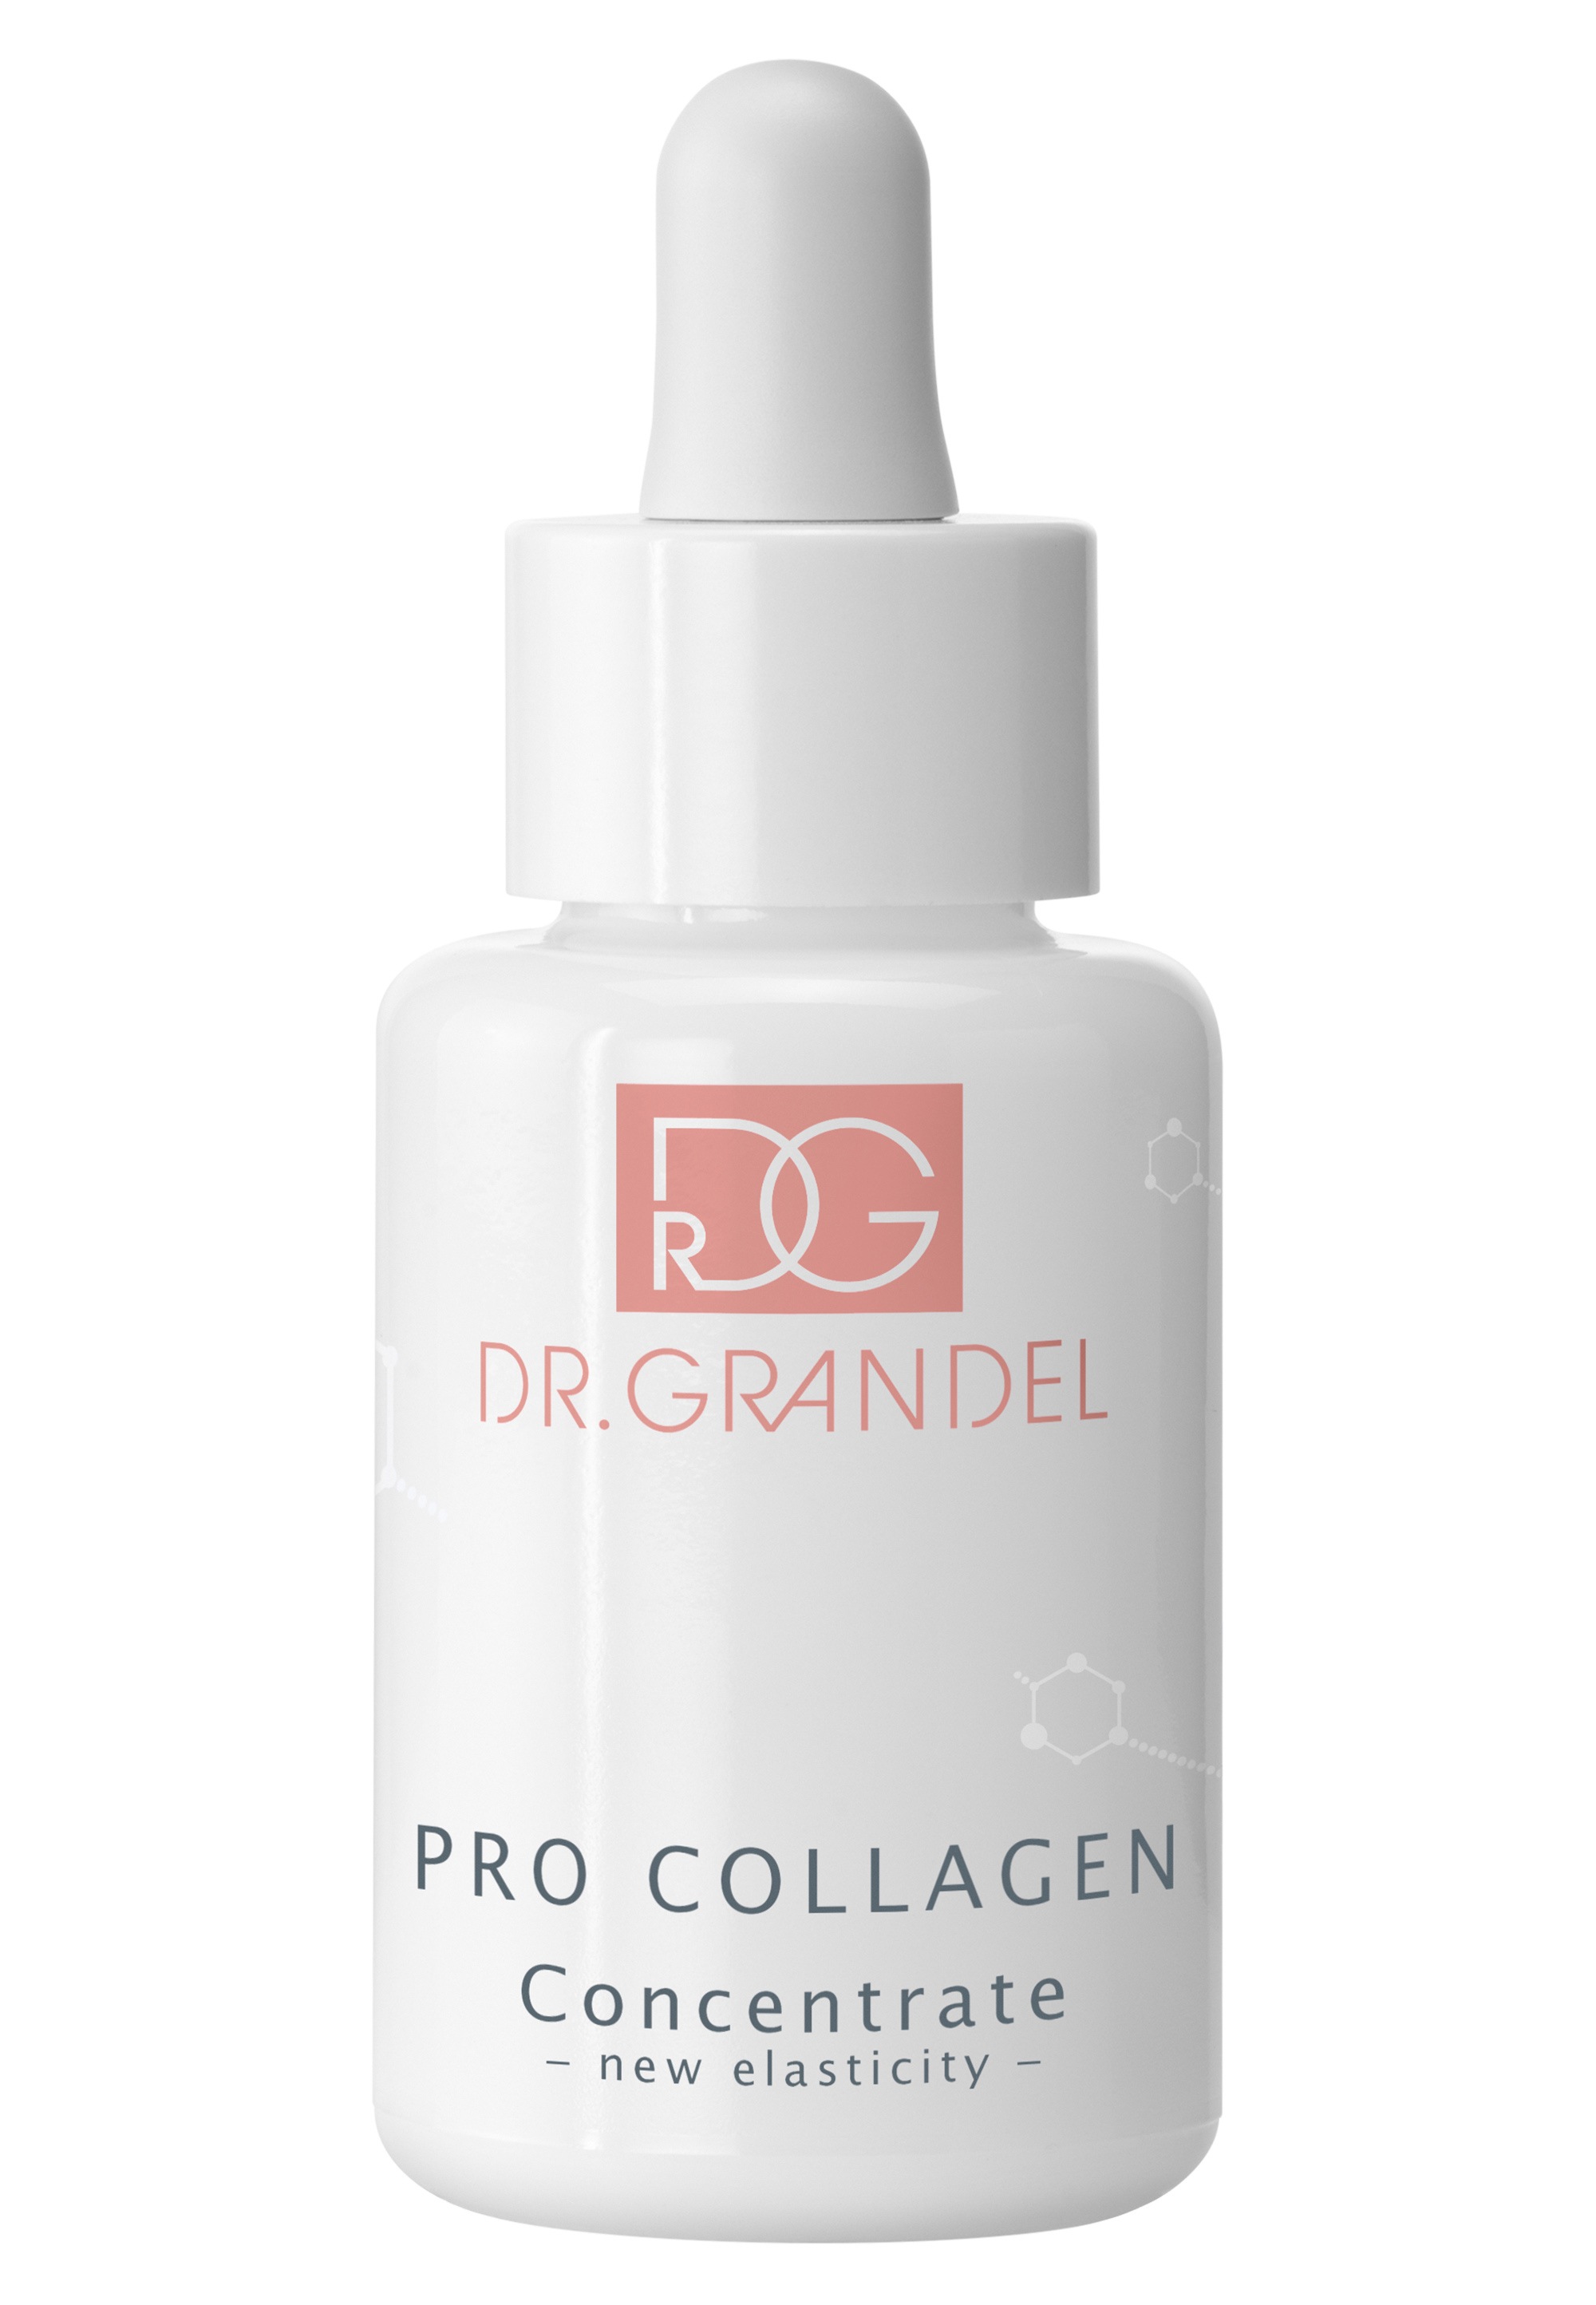 »Pro 30 GRANDEL DR. Concentrate« Collagen ml Gesichtsserum